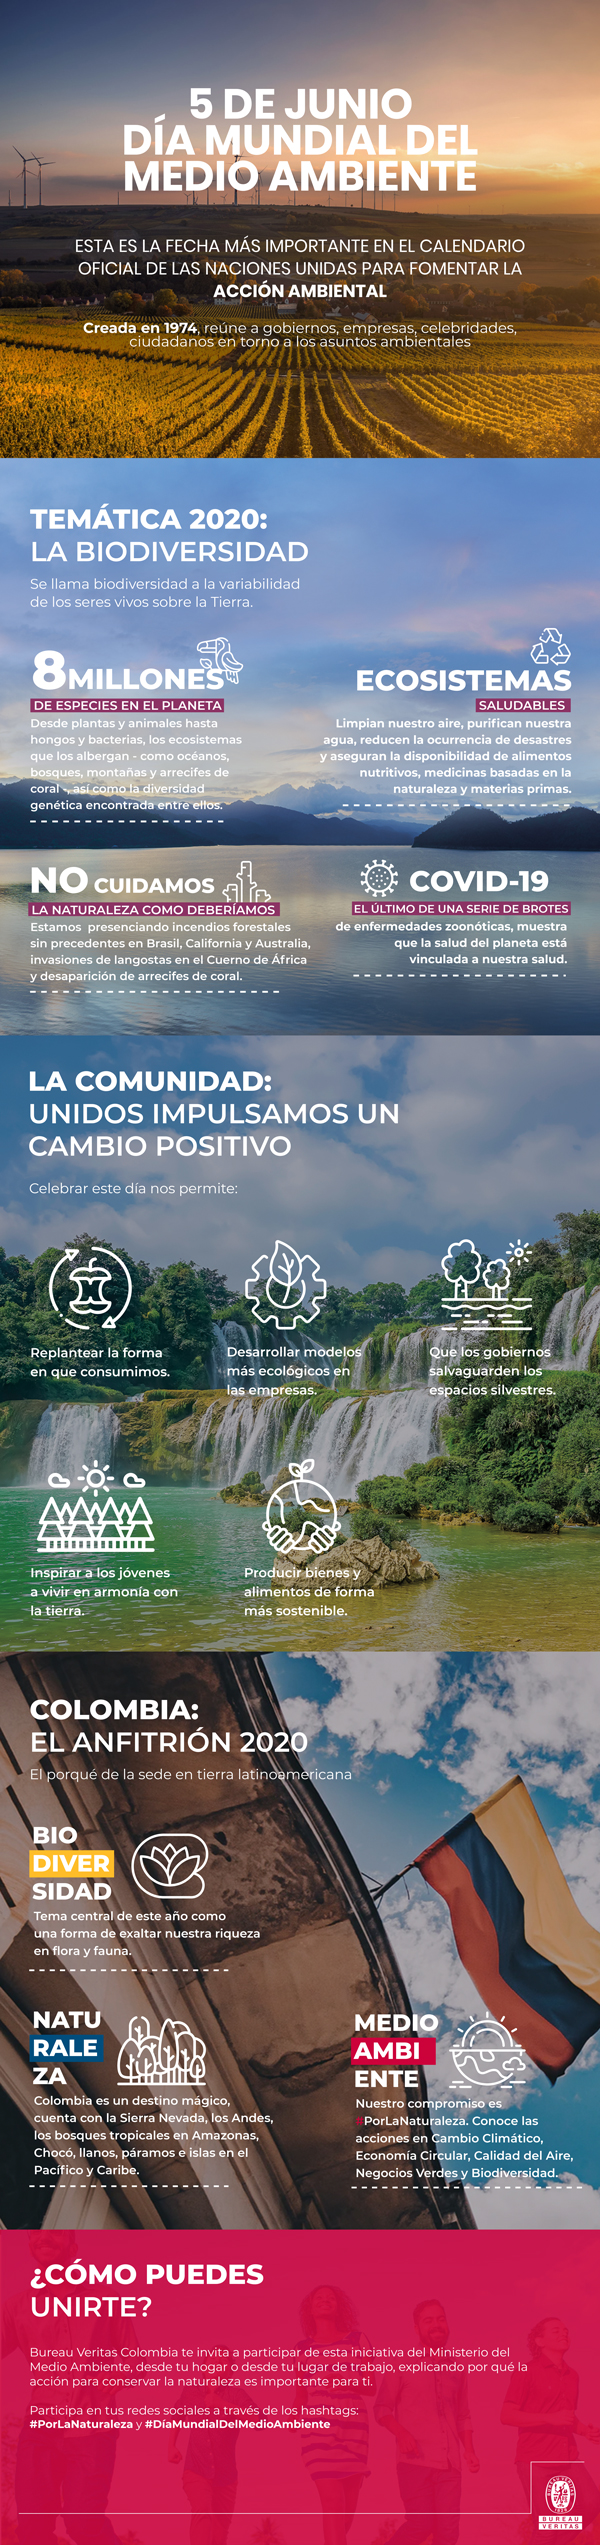 Colombia país anfitrión en el Día Internacional del Medio Ambiente - Bureau Veritas